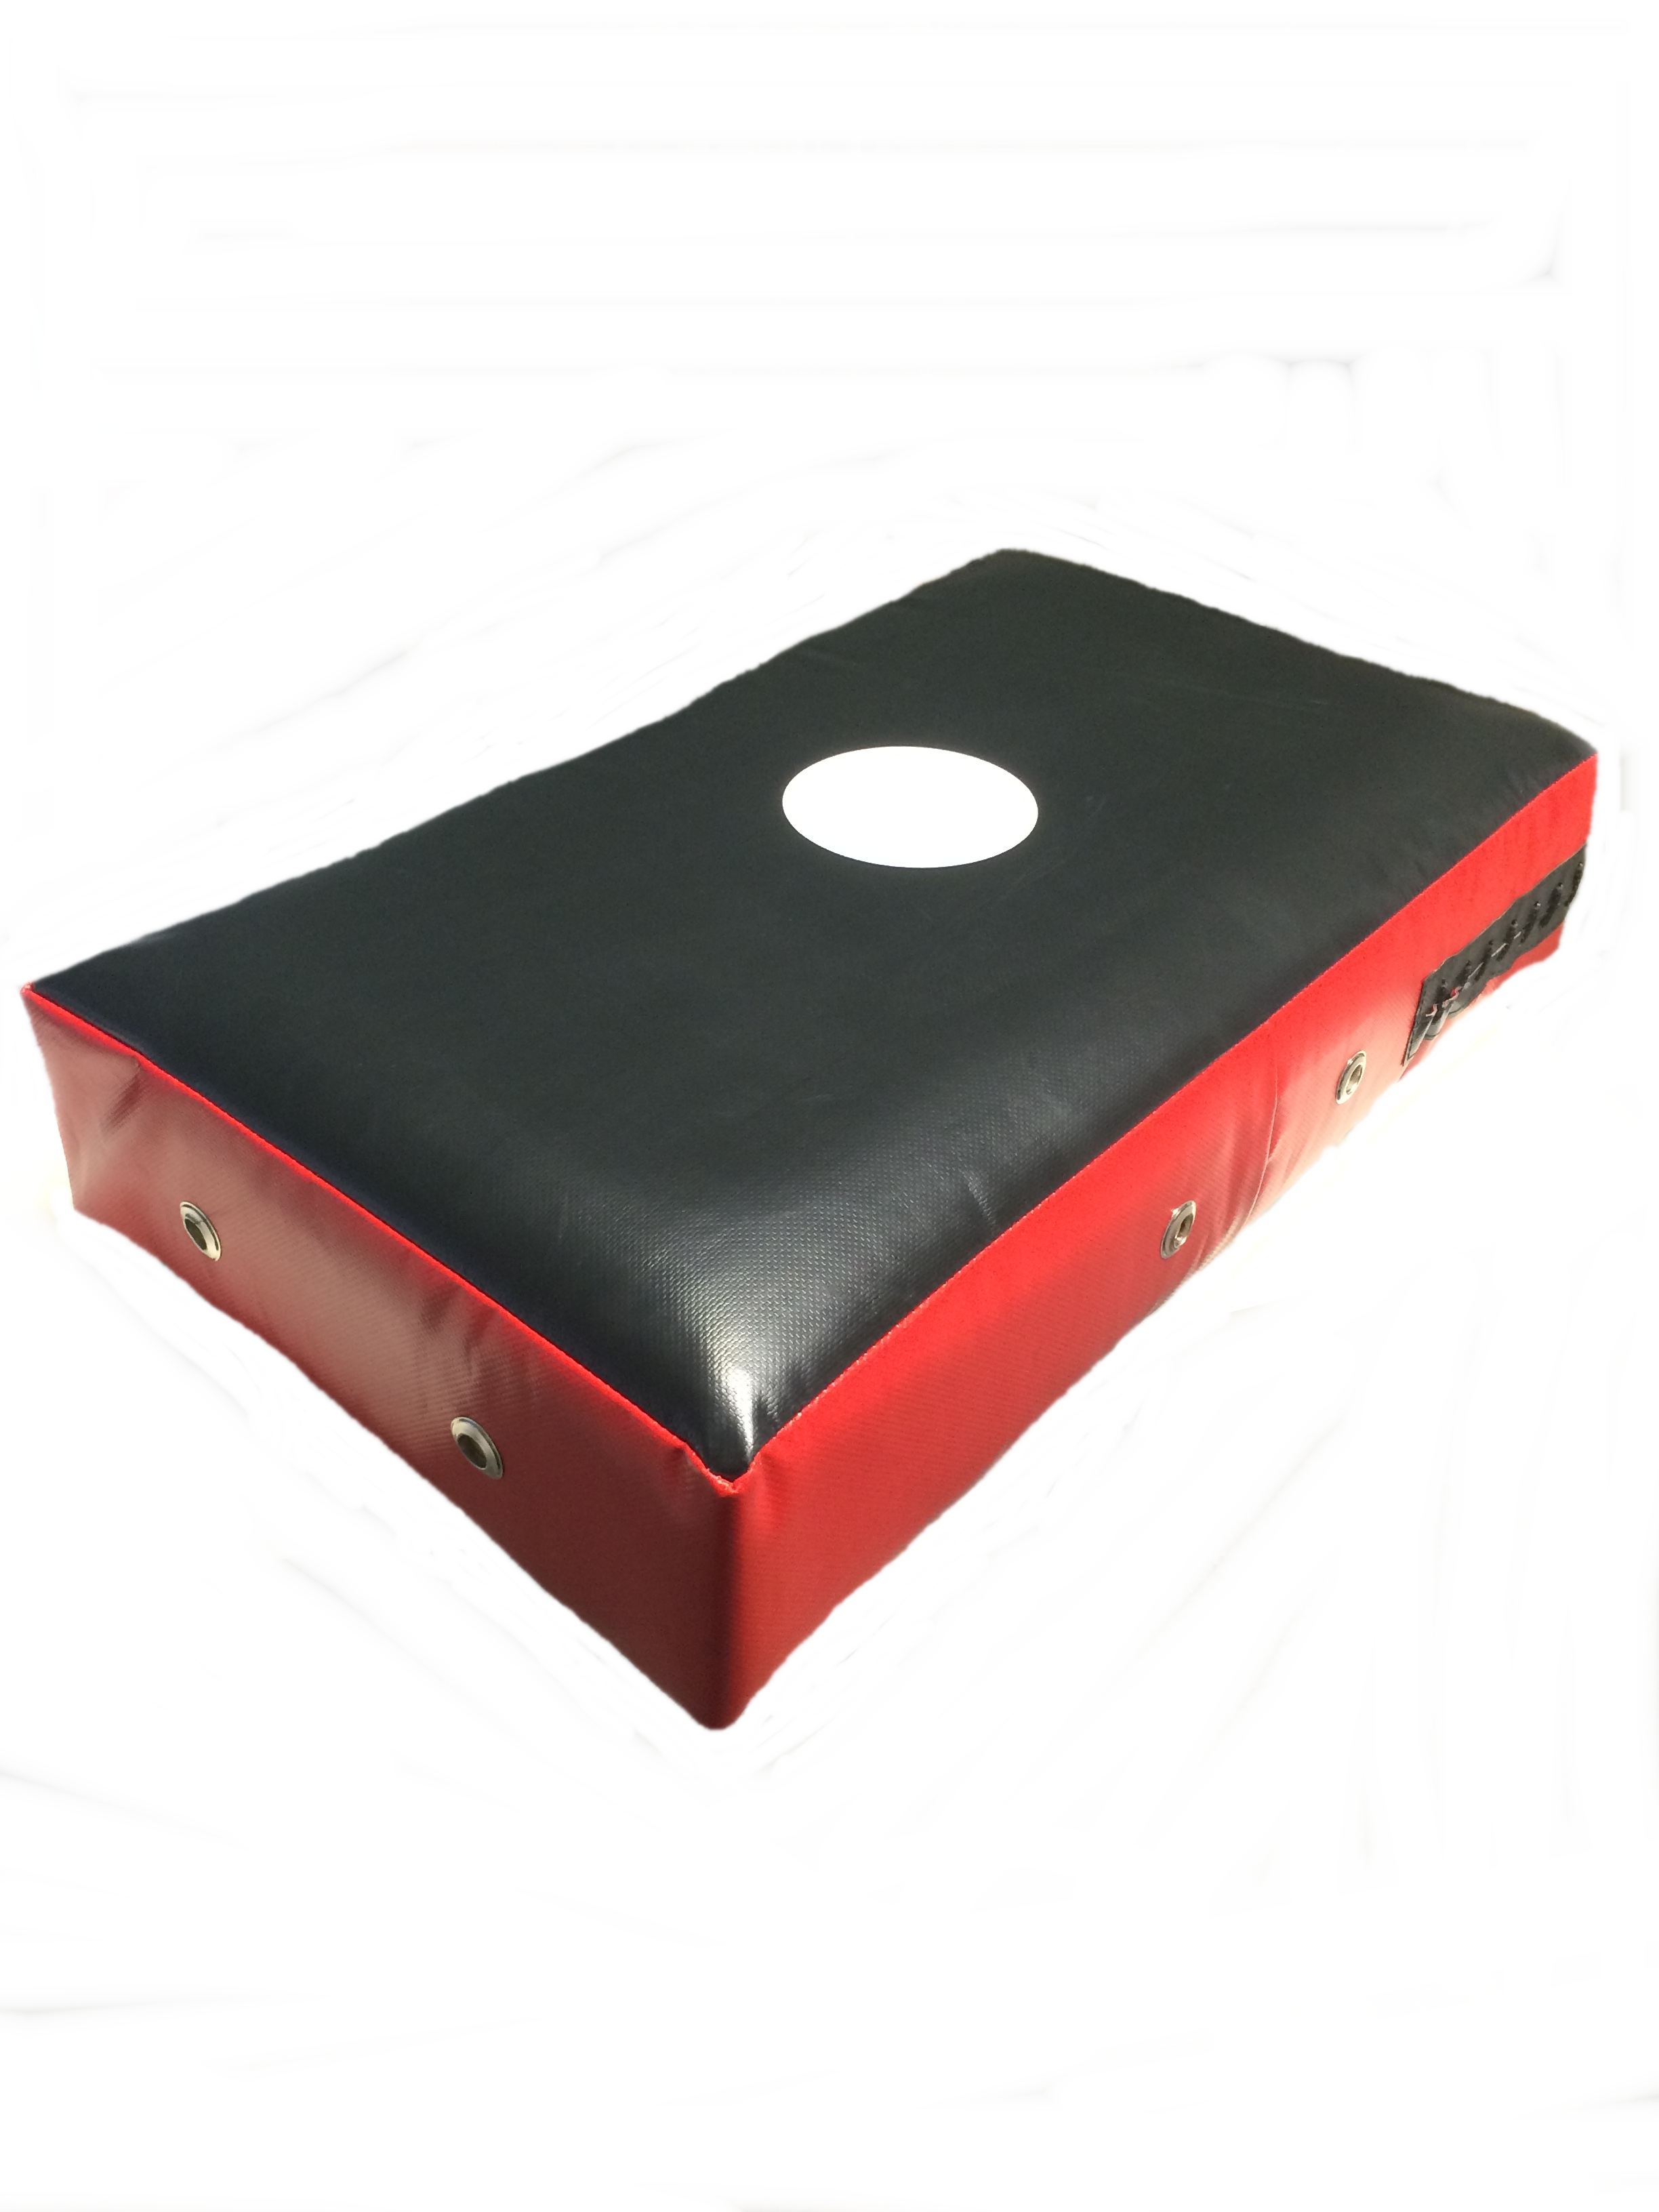 Profi-Schlagpolster groß 60 cm schwarz-rot